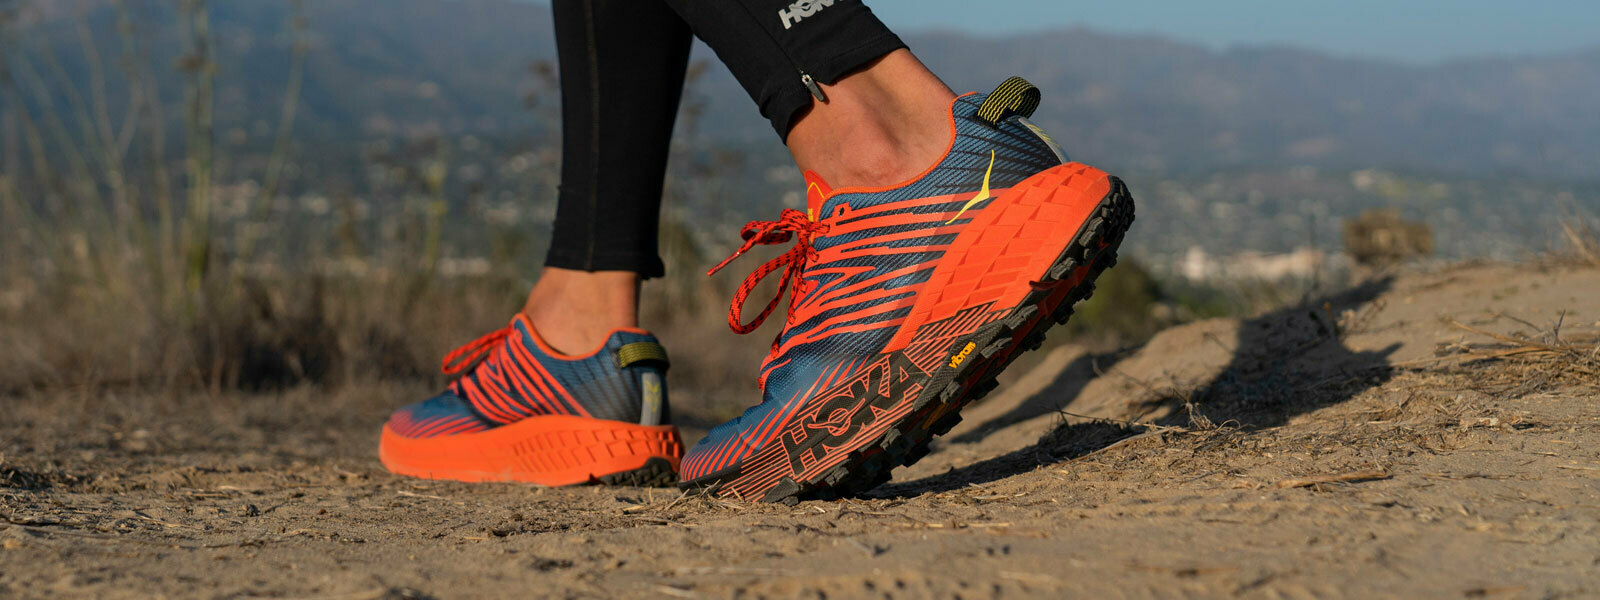 Hoka trail shoes